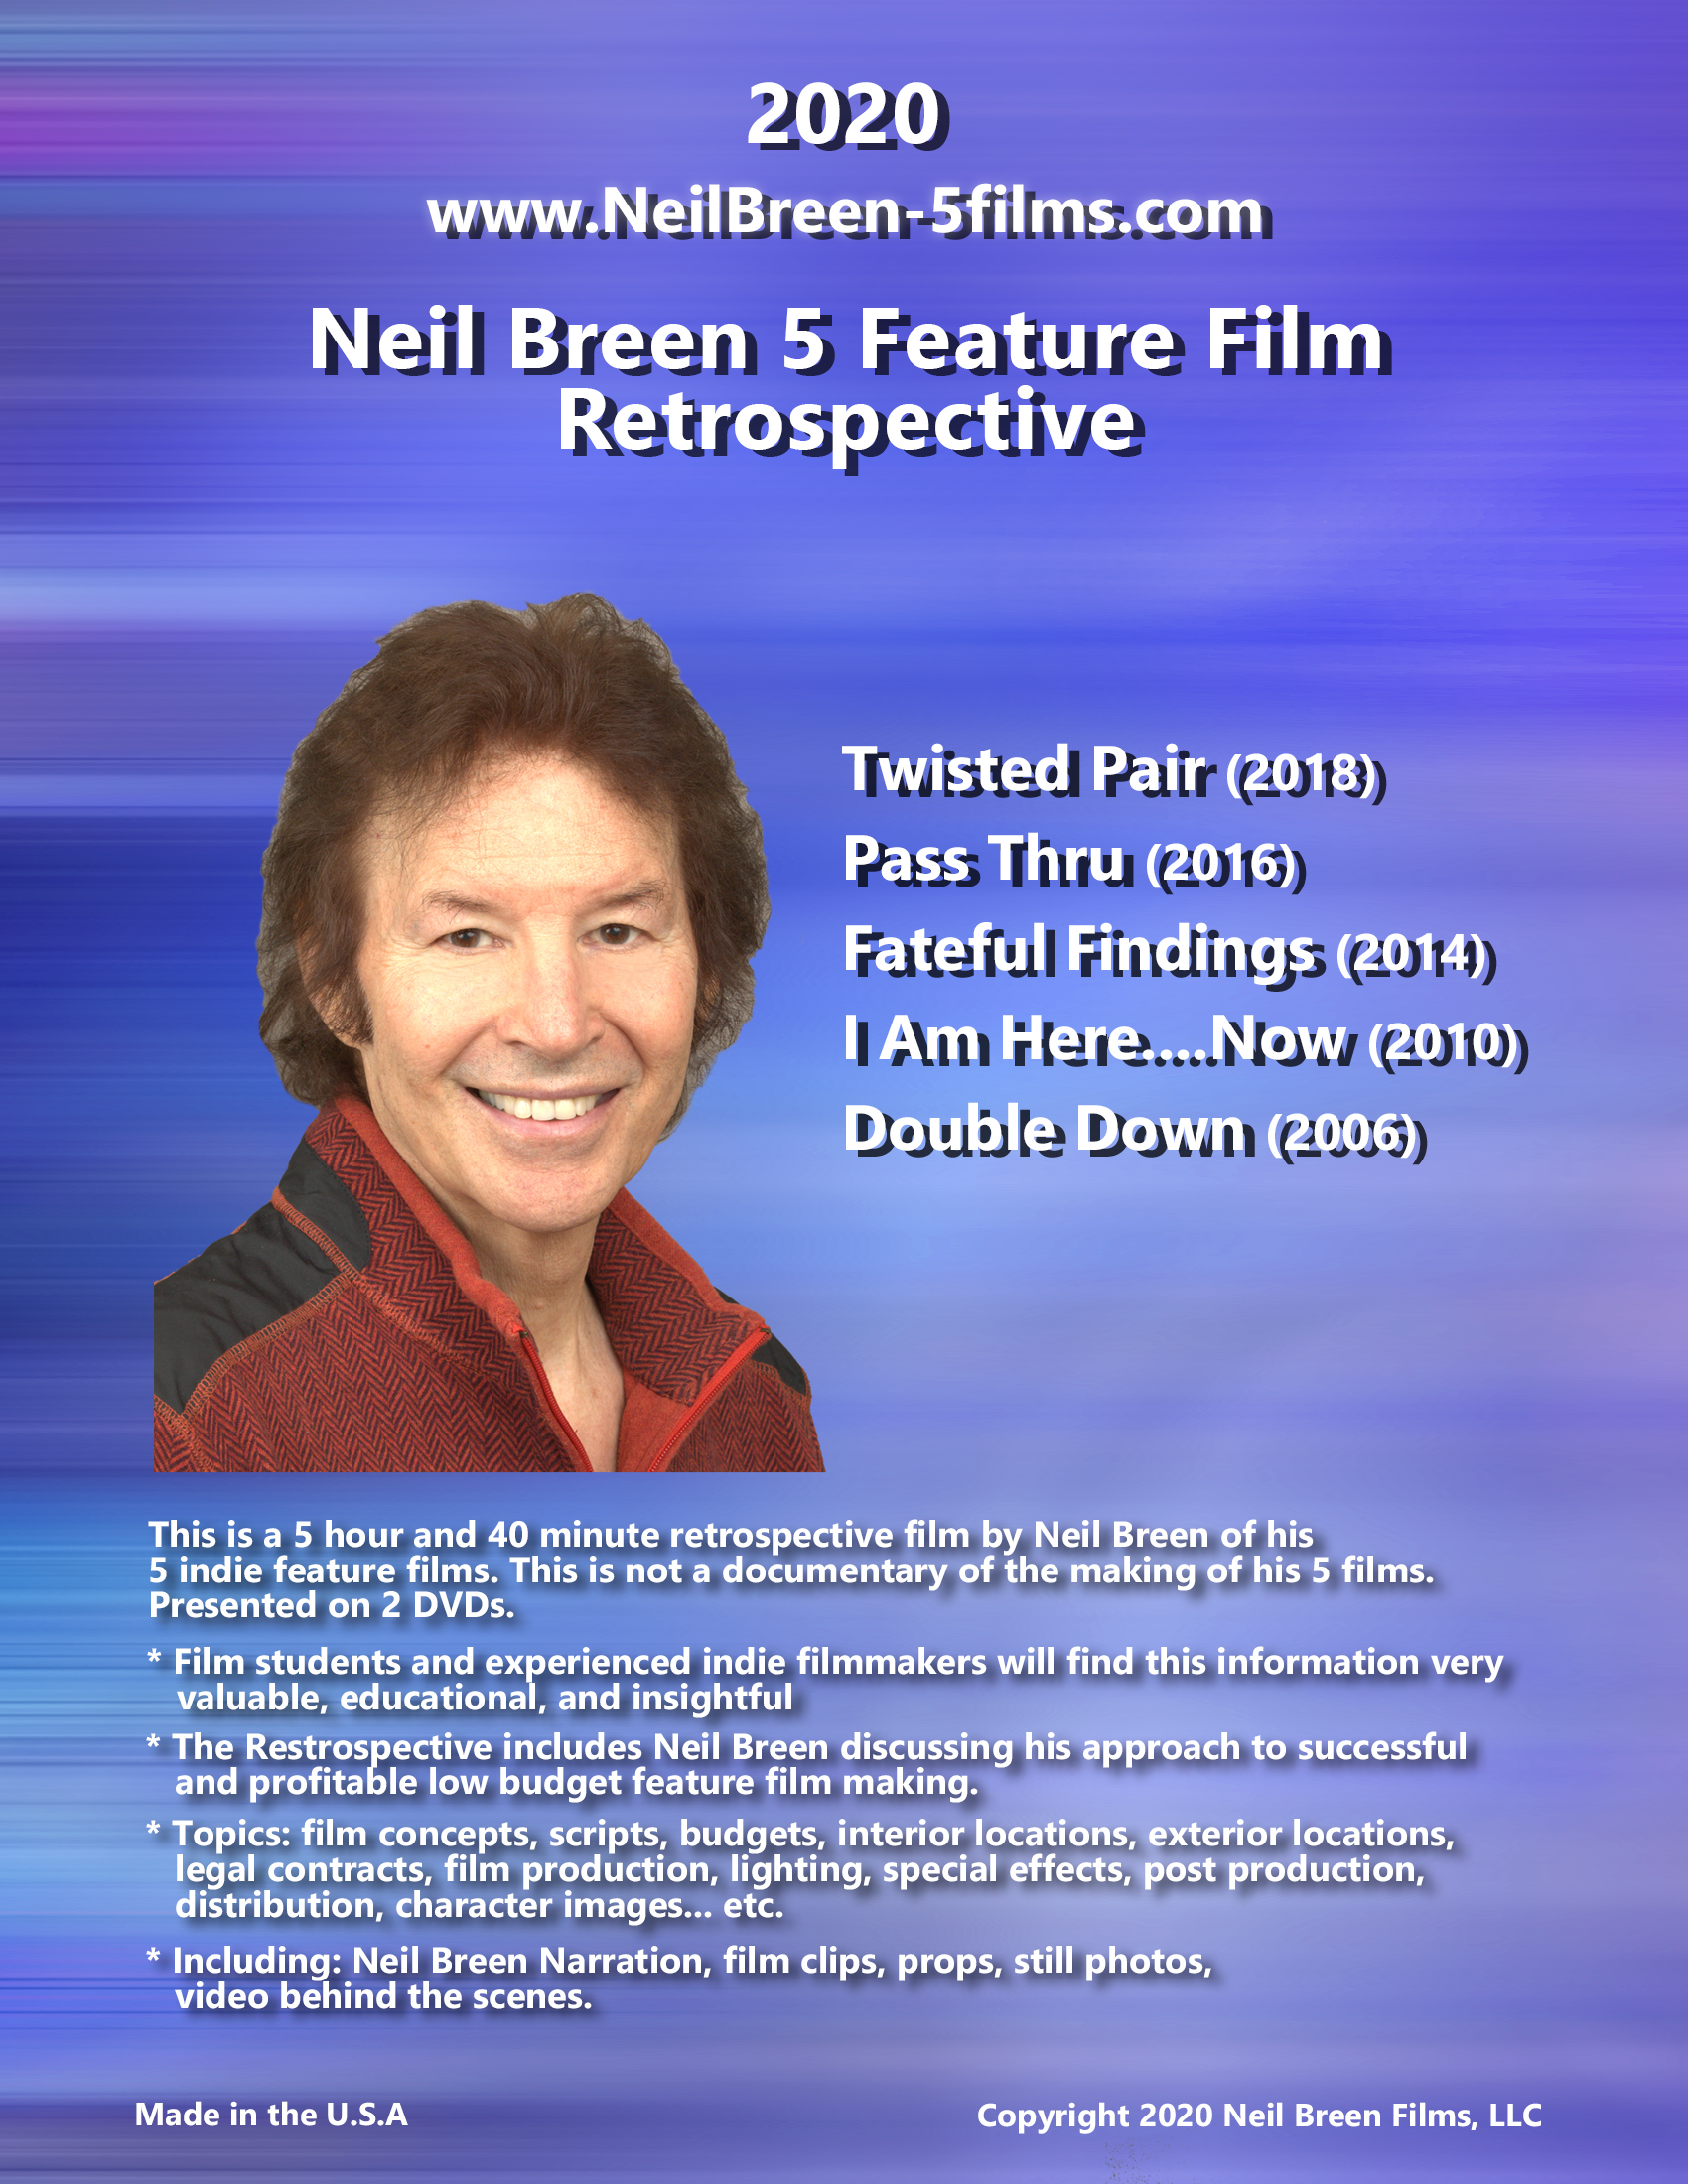 Neil Breen 5 Feature Film Retrospective (2020) Screenshot 2 